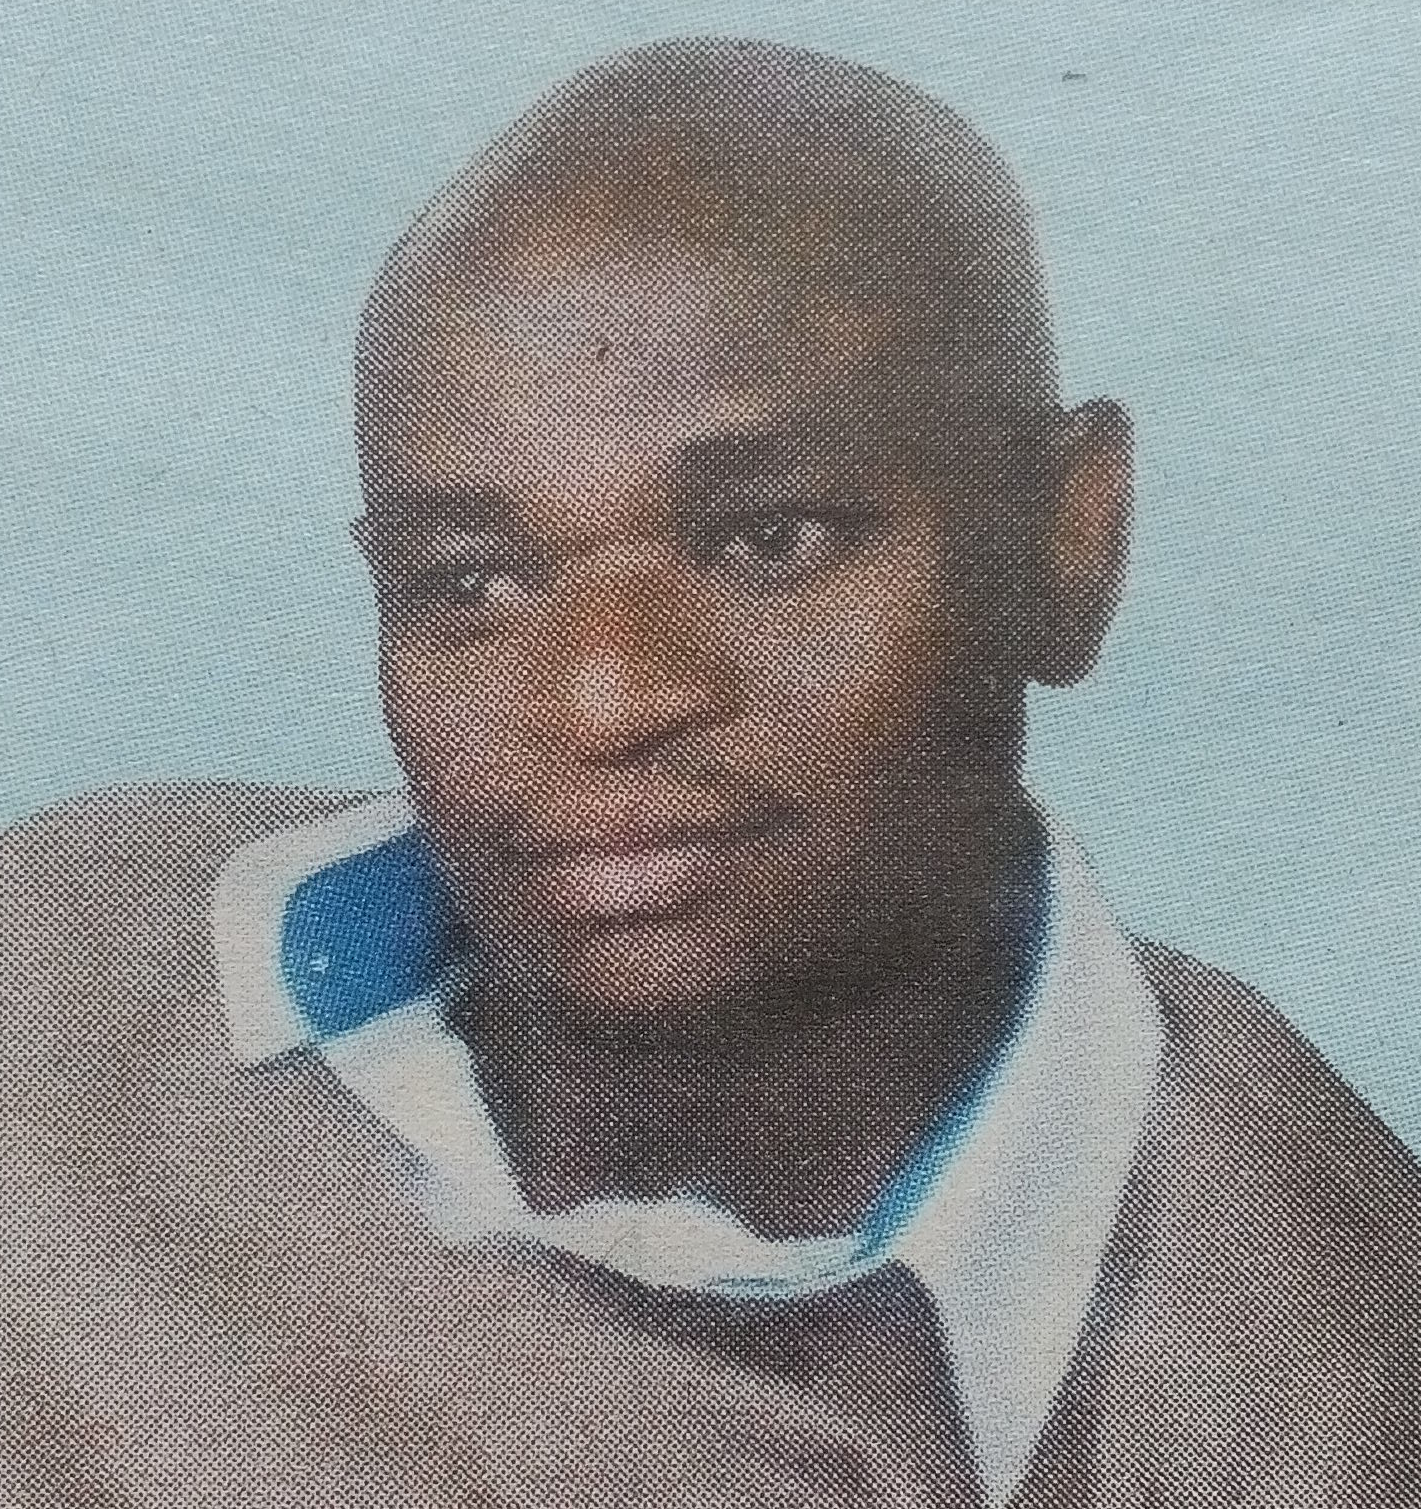 Obituary Image of Daniel Mwaniki Ngeti